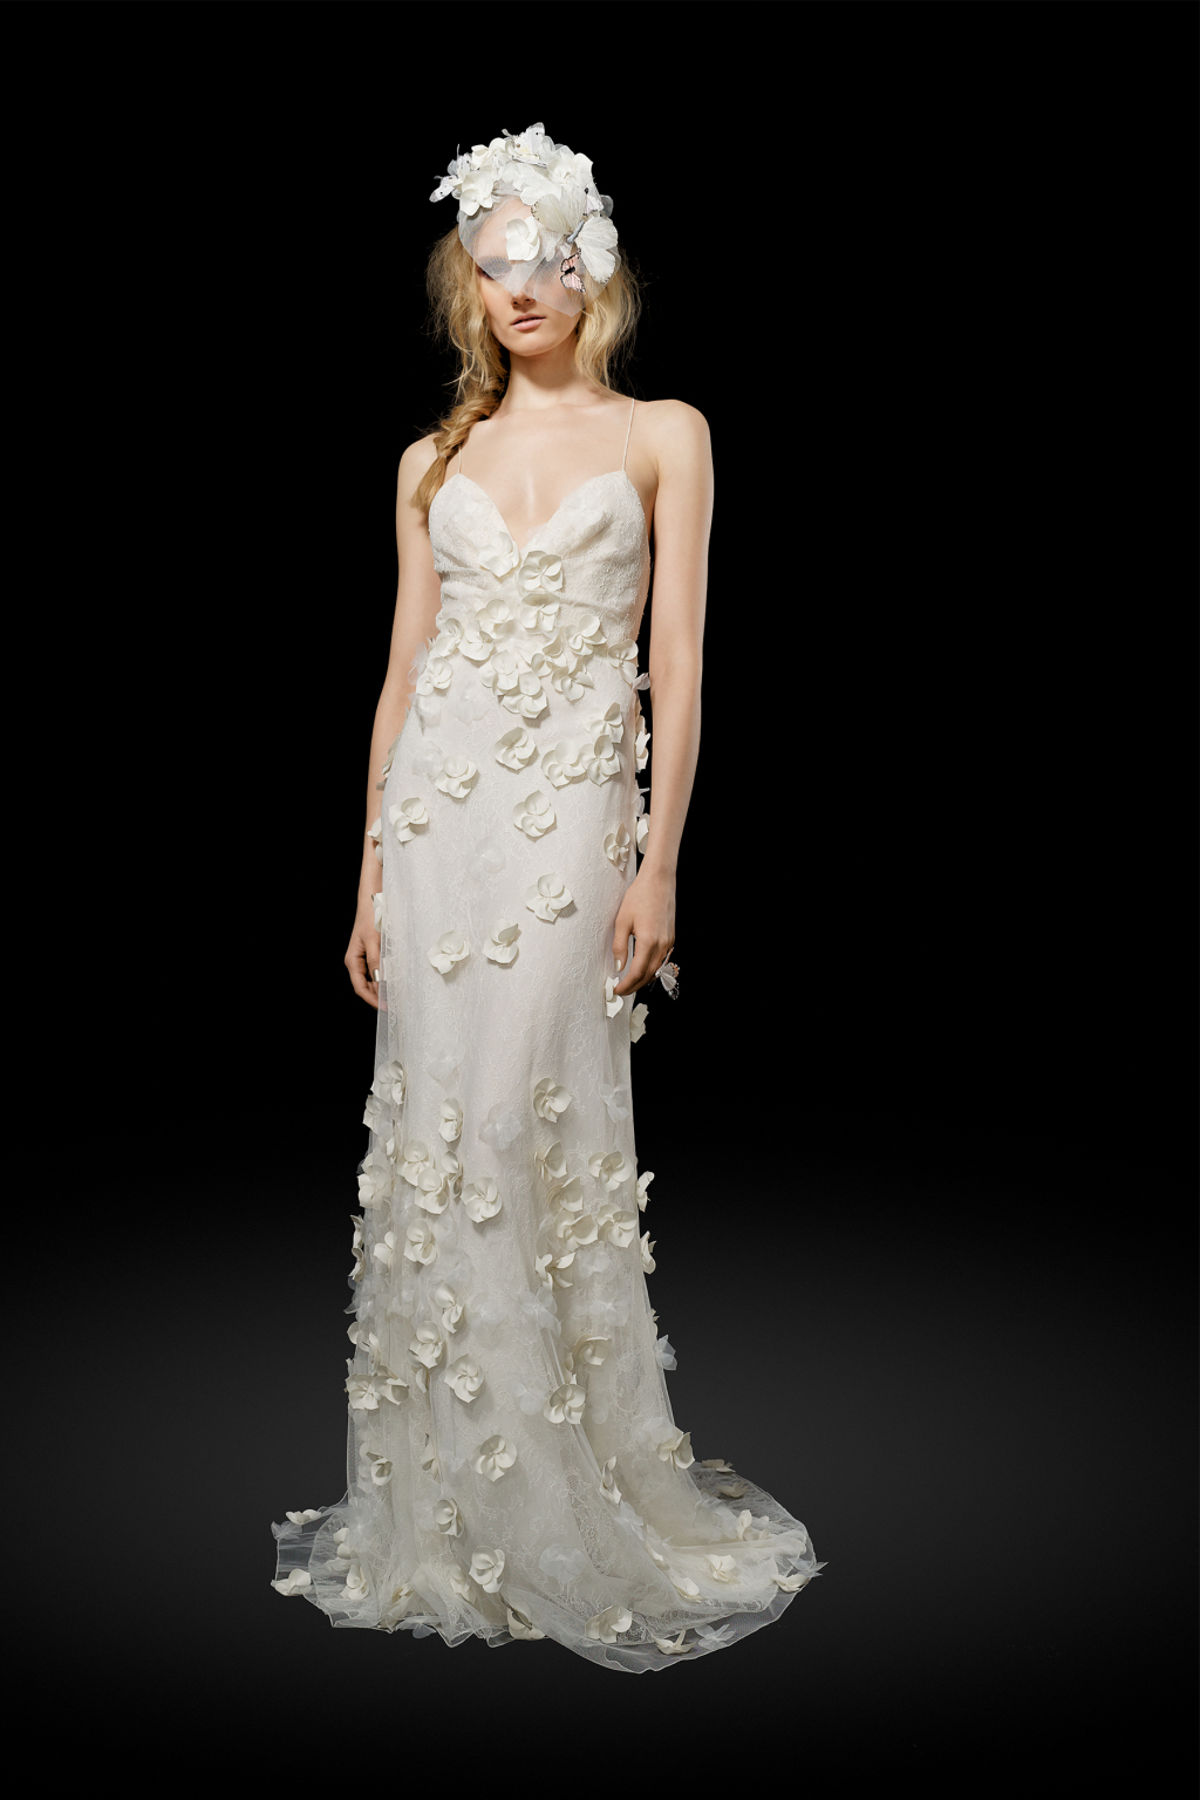 Свадебное платье с рассыпаными нежными белыми цветами и такая же шляпка из коллекции Elizabeth Fillmore.